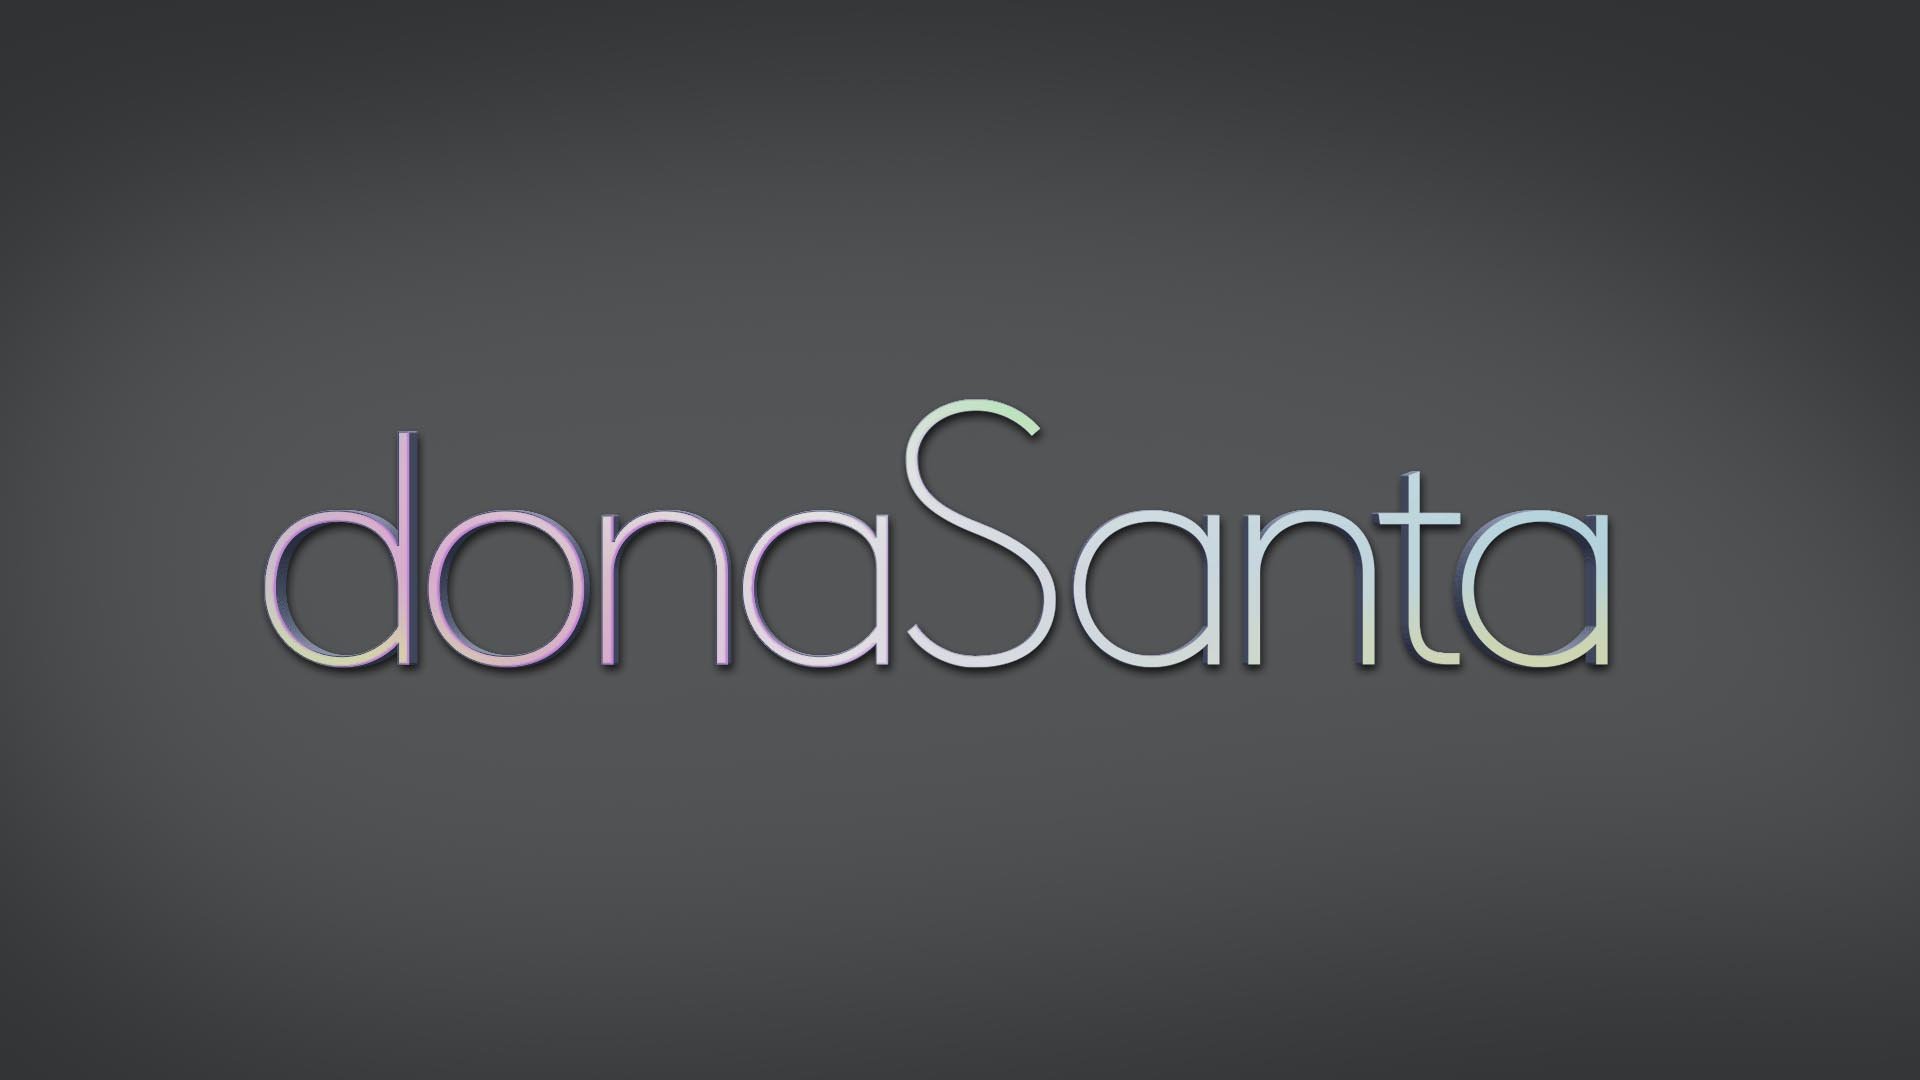 estudio-mola-dona-santa-022-logotipo-volumetria.jpg